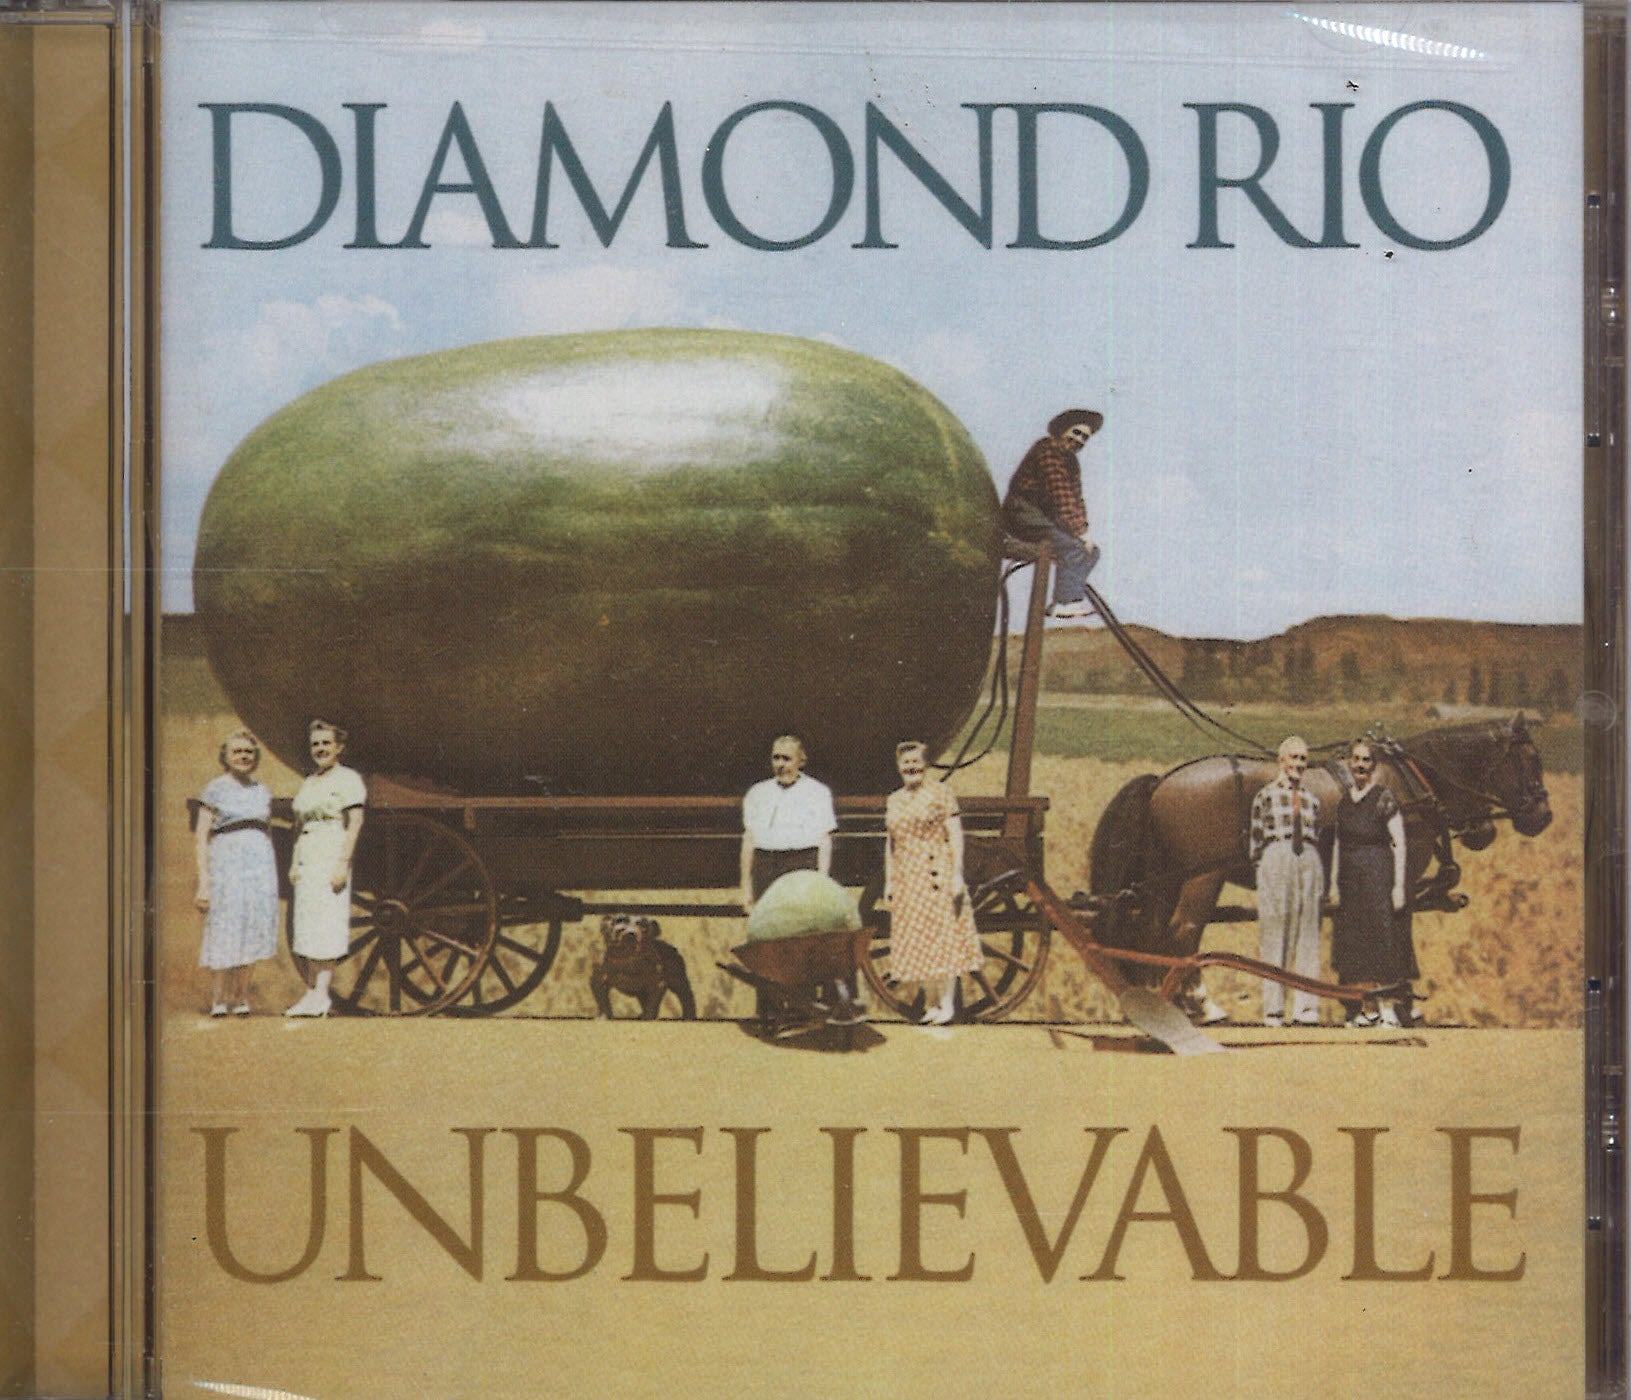 Diamond Rio Unbelievable